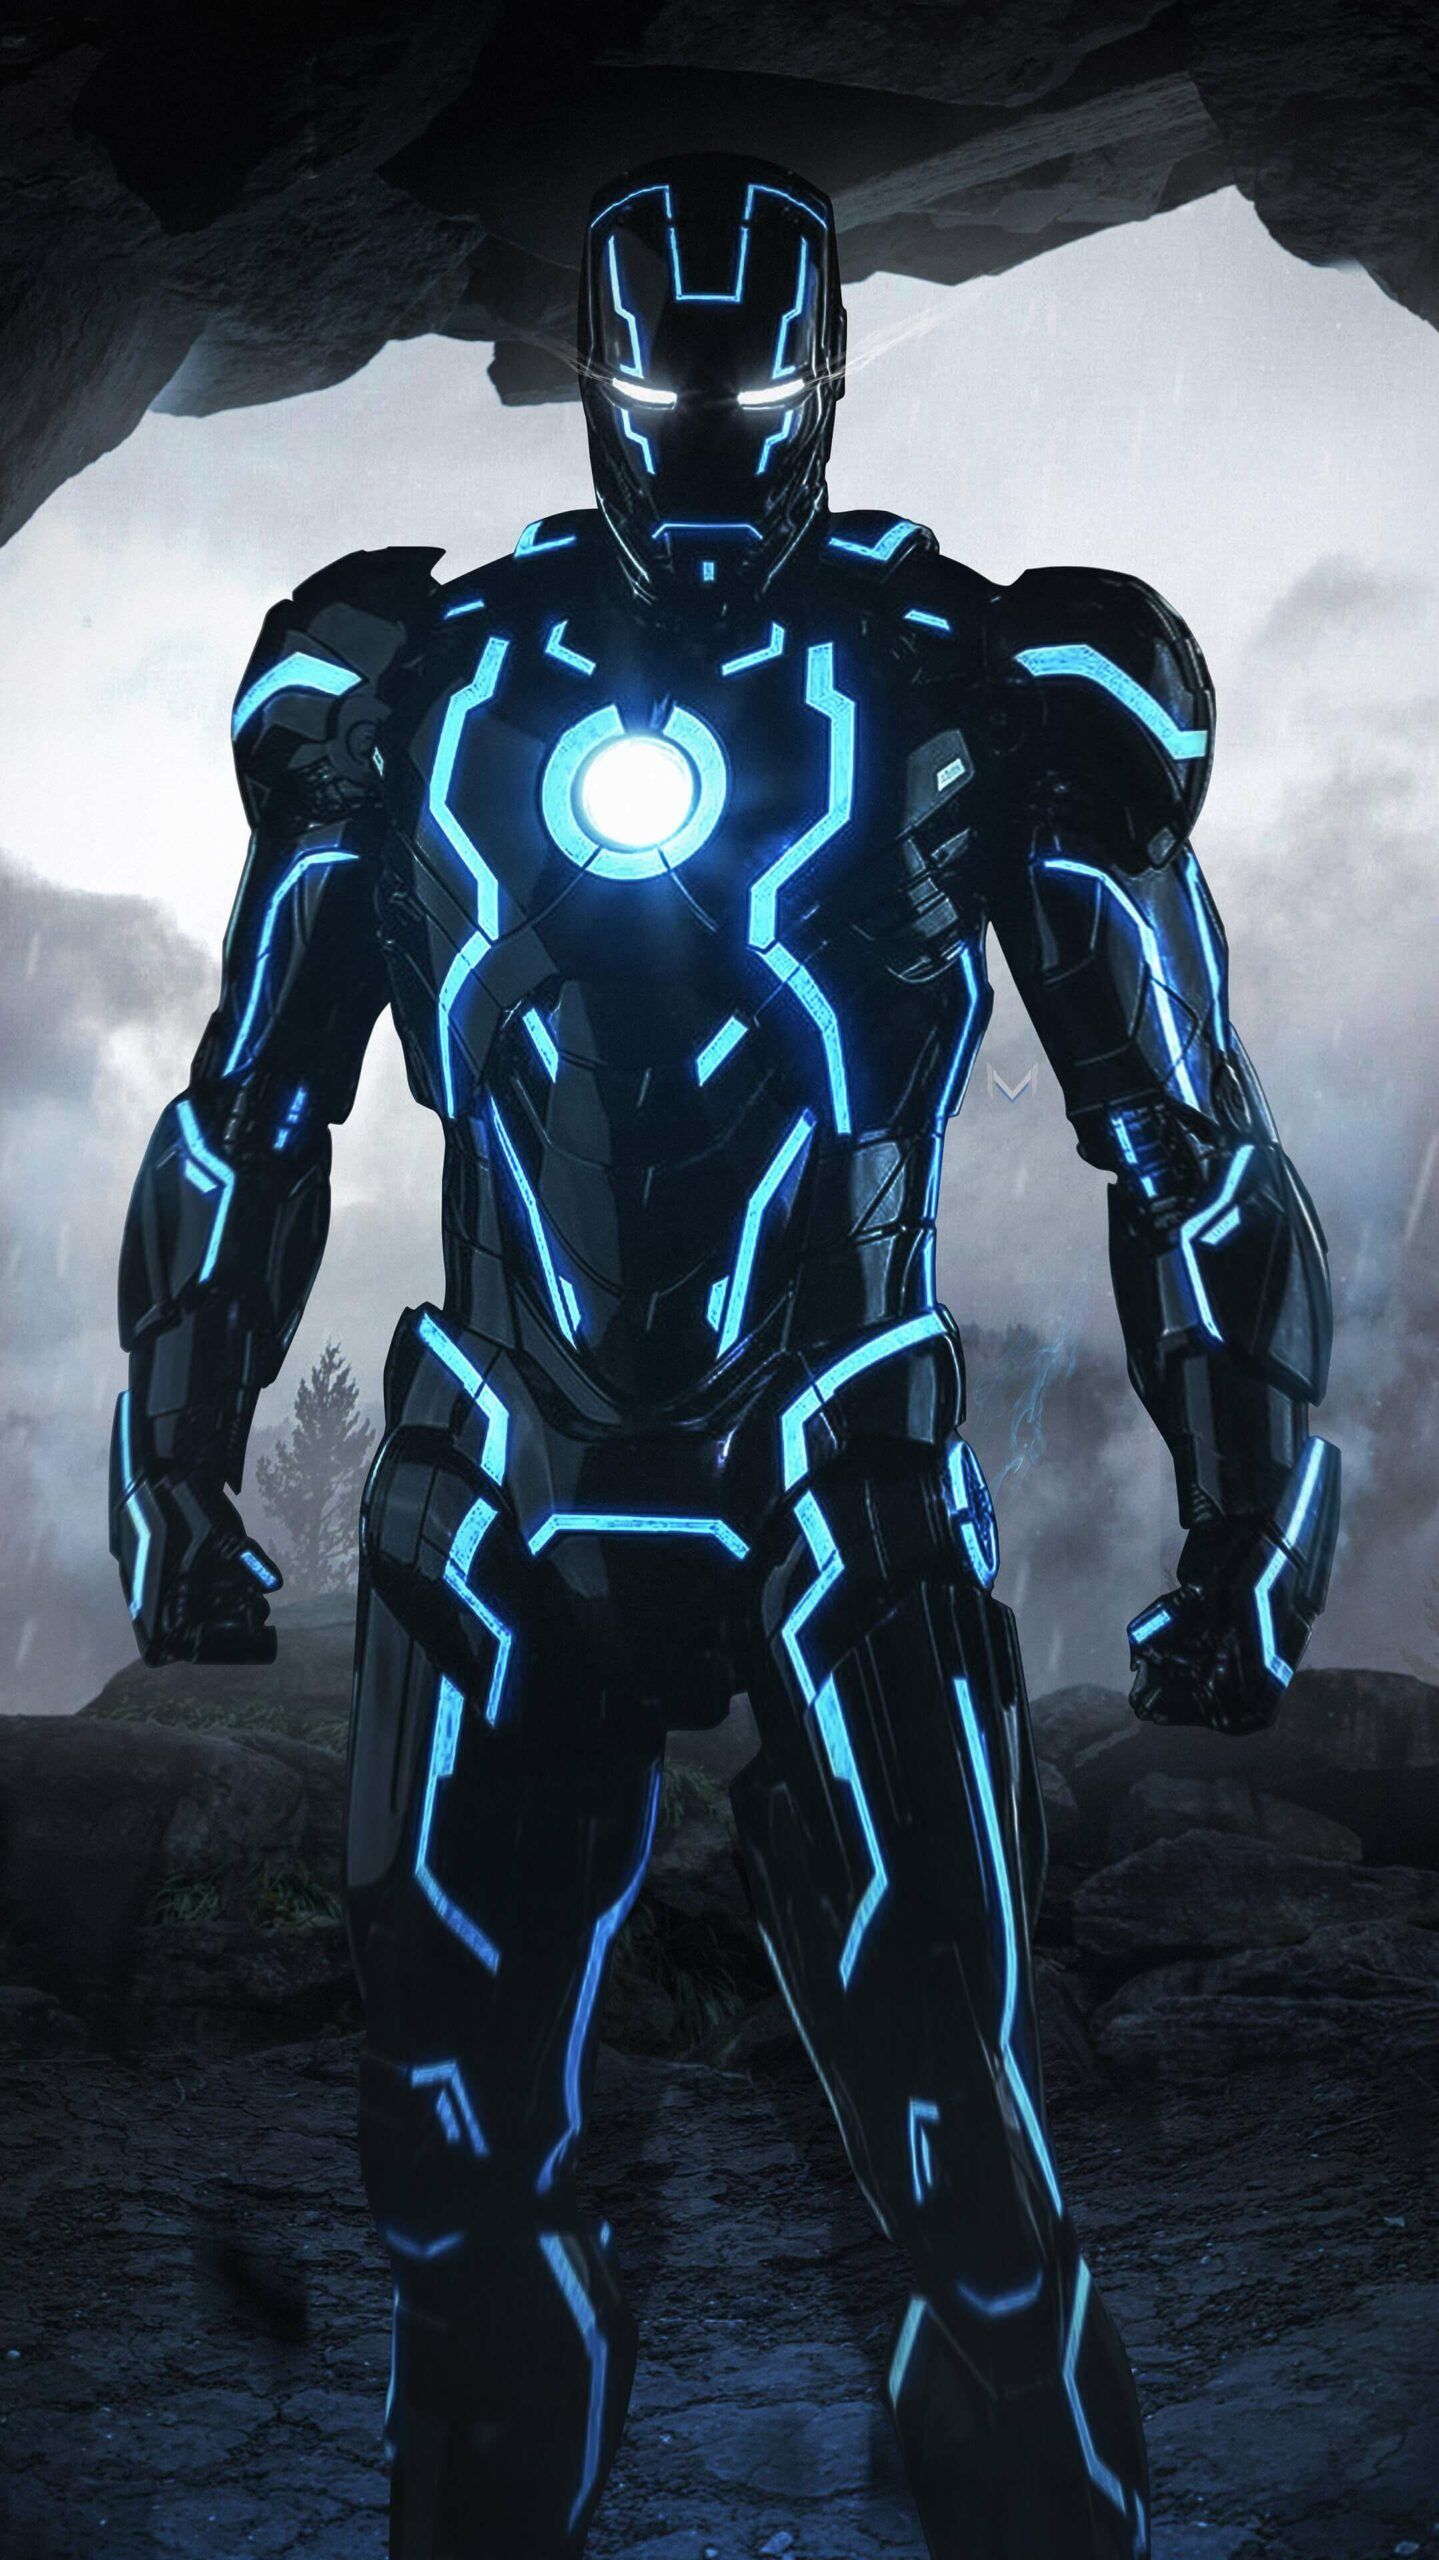 Iron Man Neon Suit Wallpaper. Iron man avengers, Iron man photo, Iron man suit